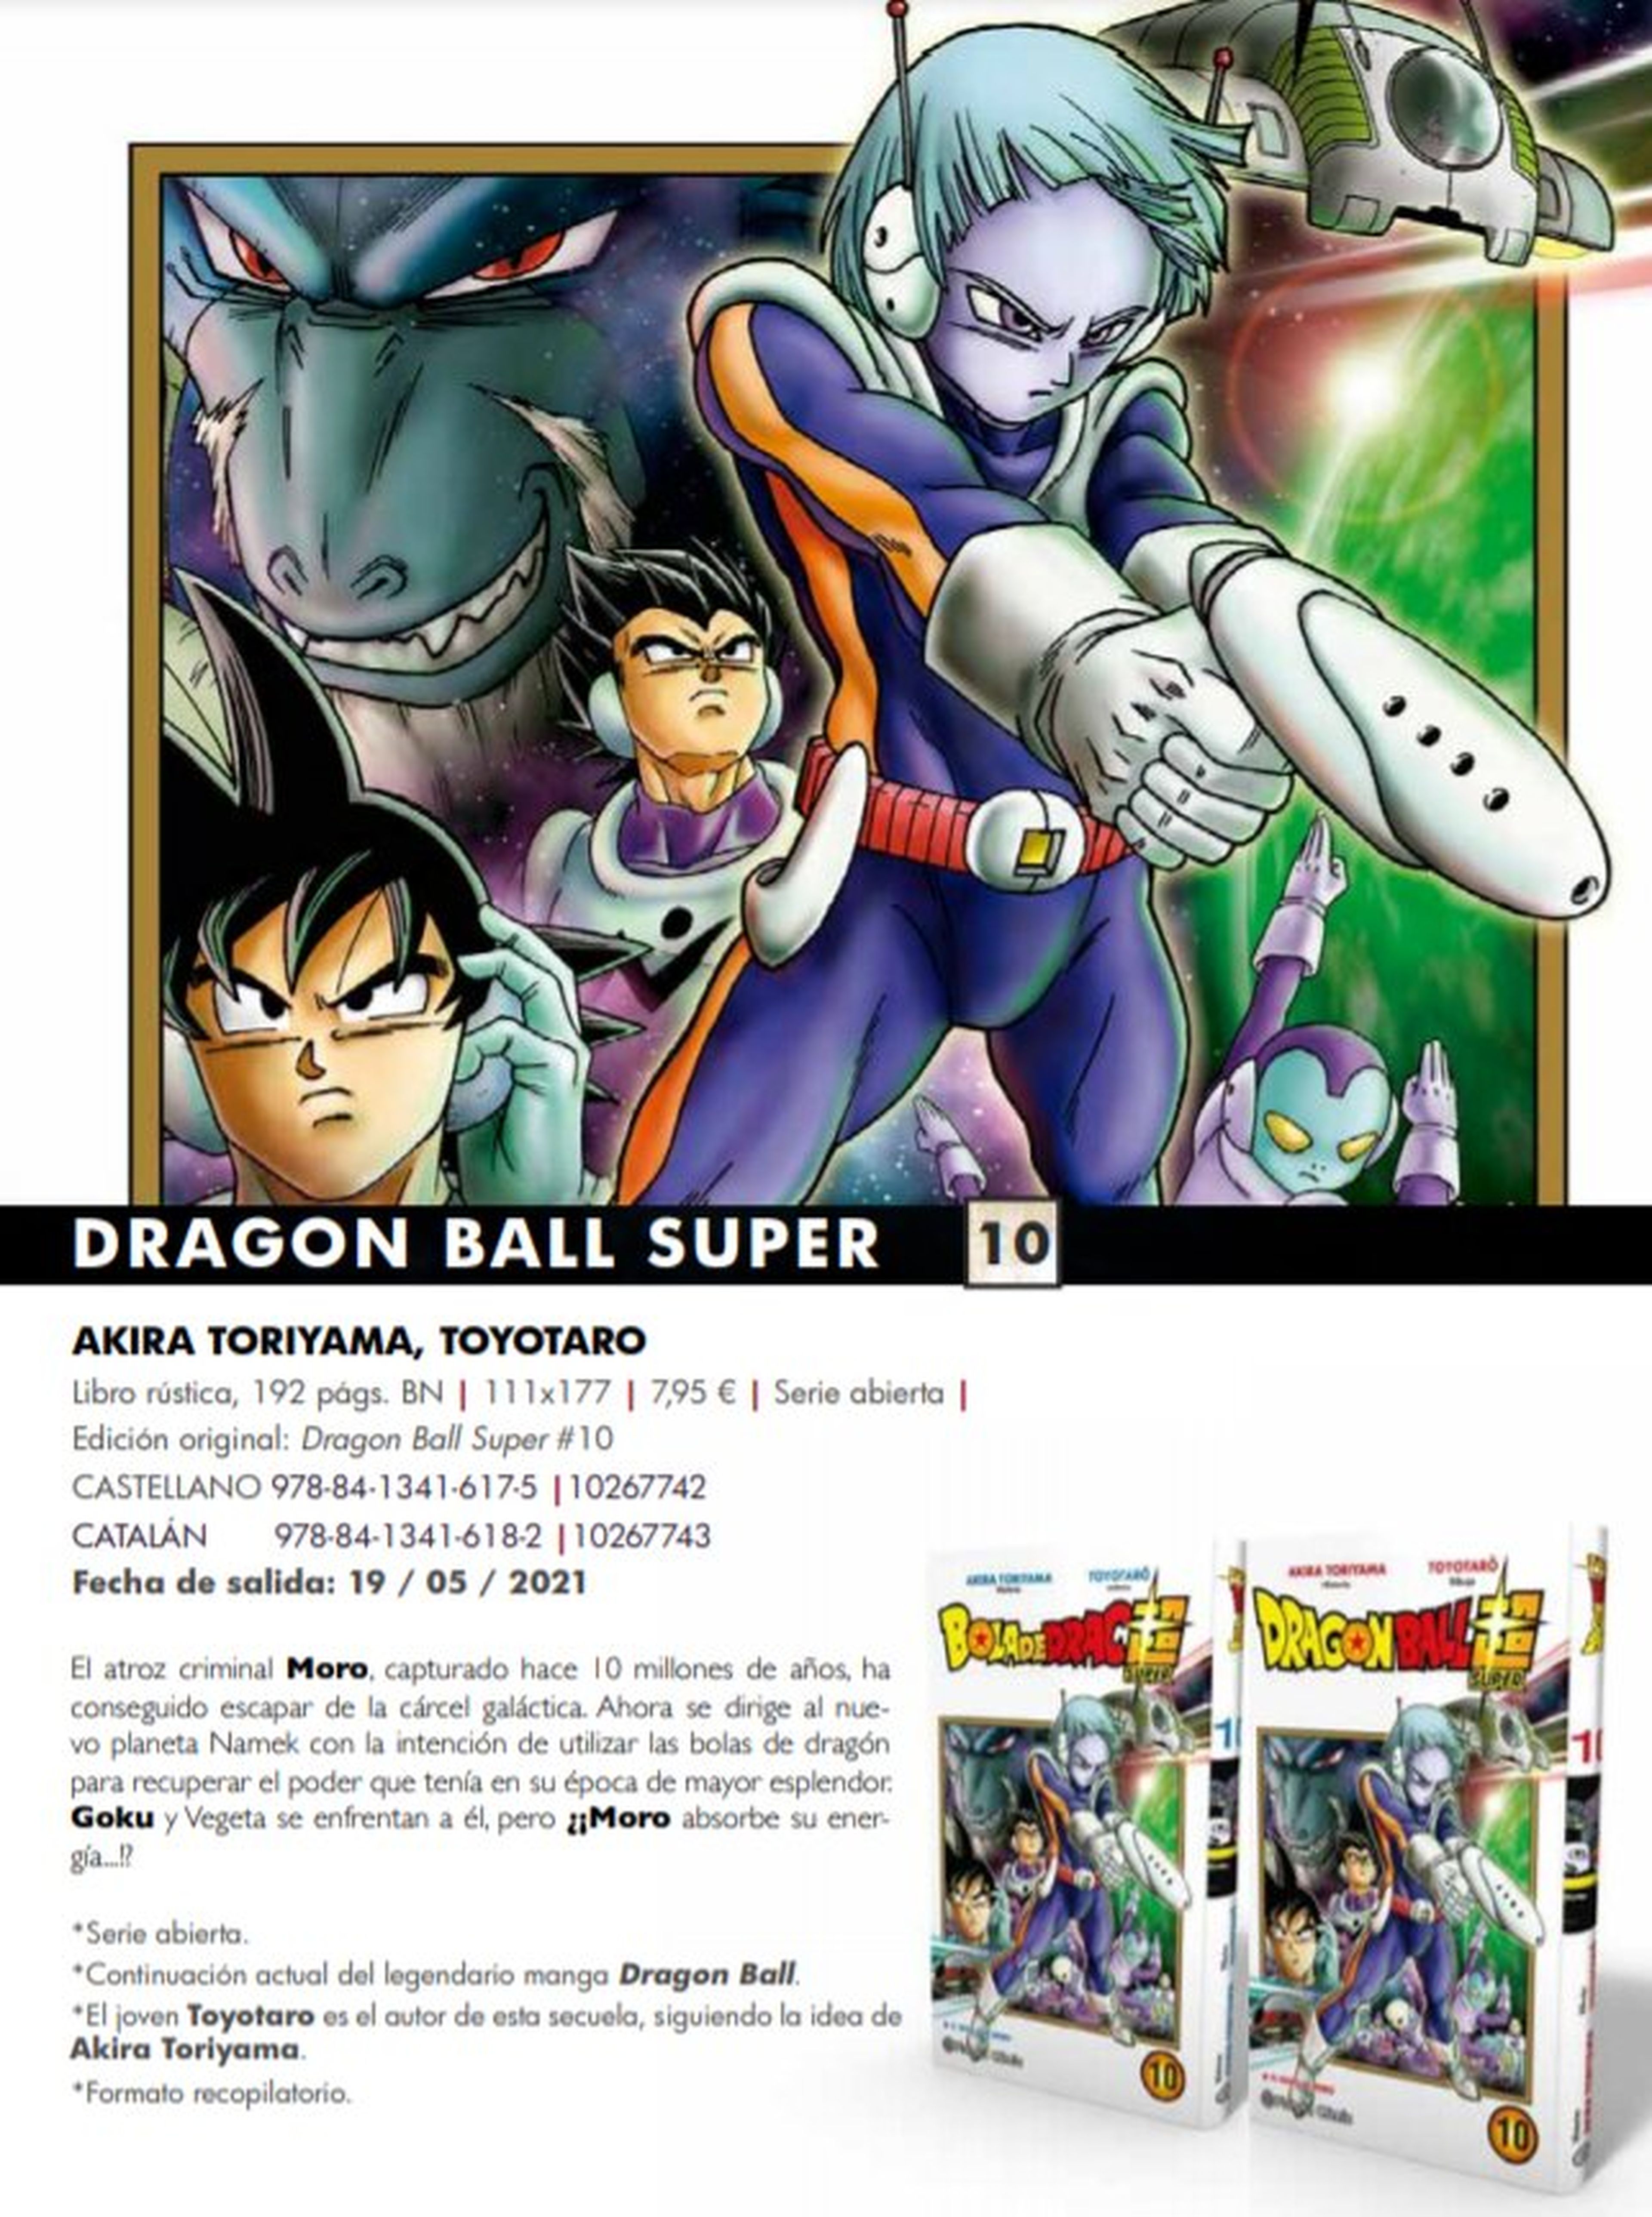 Dragon Ball Super - Portada y fecha de lanzamiento del tomo 10 en España